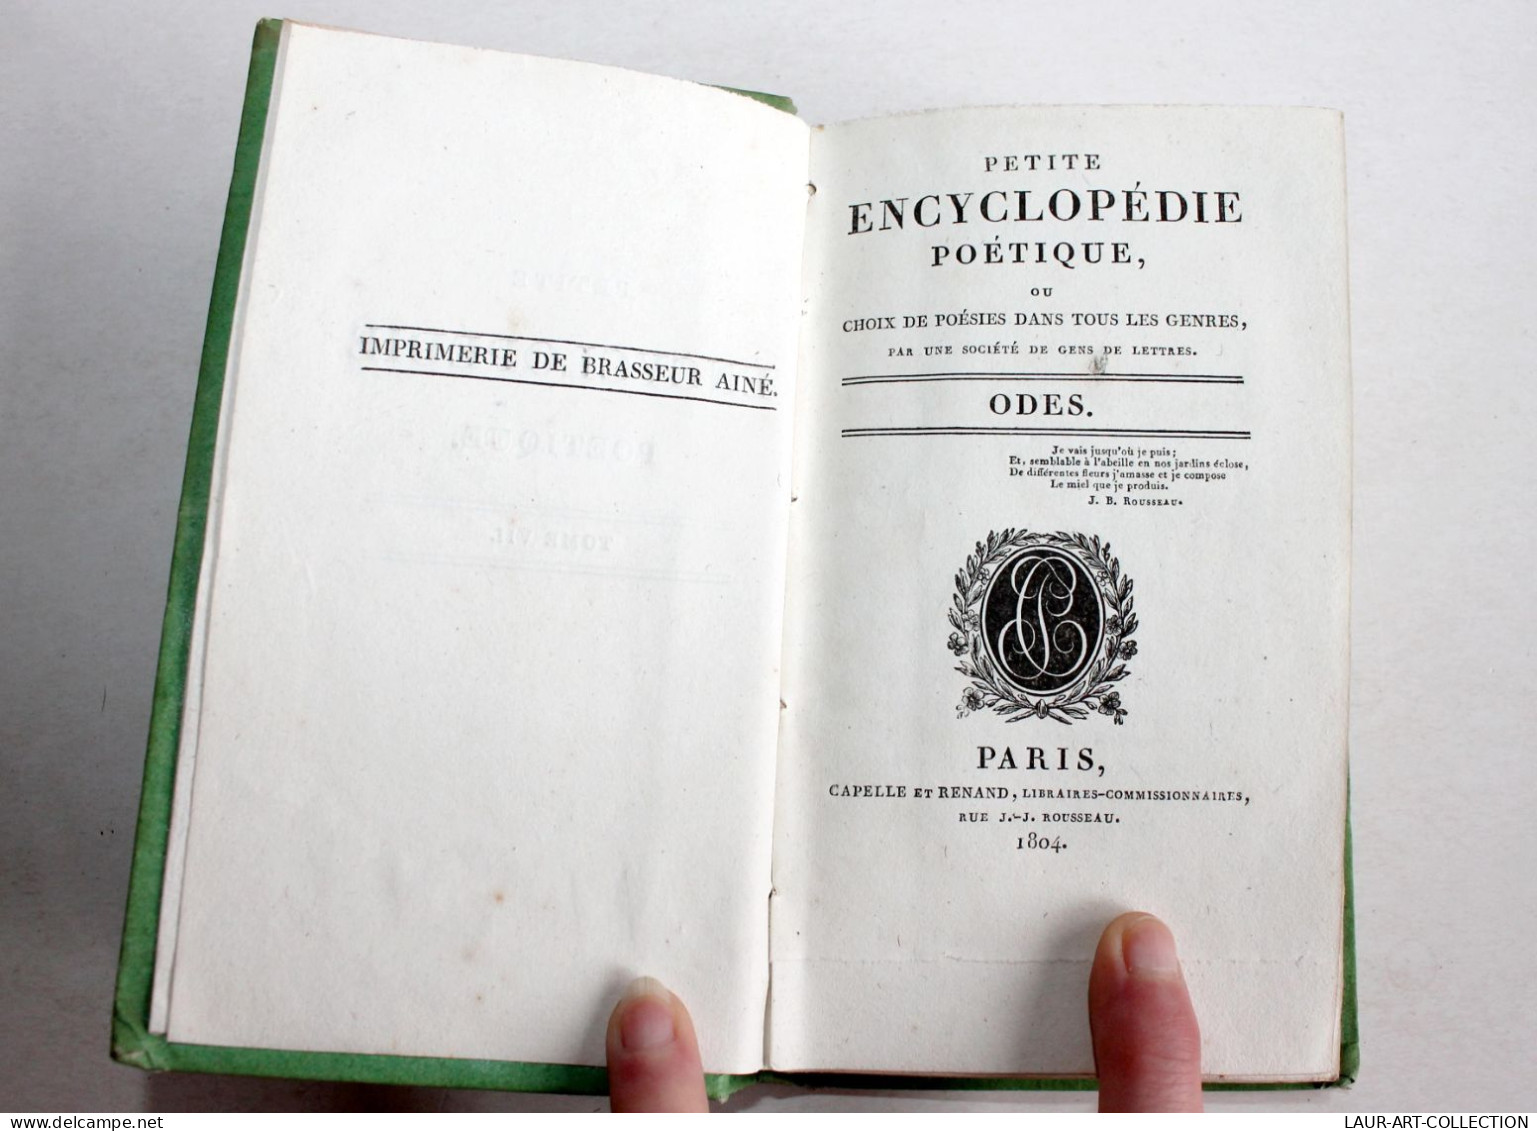 PETITE ENCYCLOPEDIE POETIQUE CHOIX POESIES TOUS GENRES CONTENANT 50 ODES 1804 T7 / ANCIEN LIVRE XIXe SIECLE (1803.184) - Autori Francesi